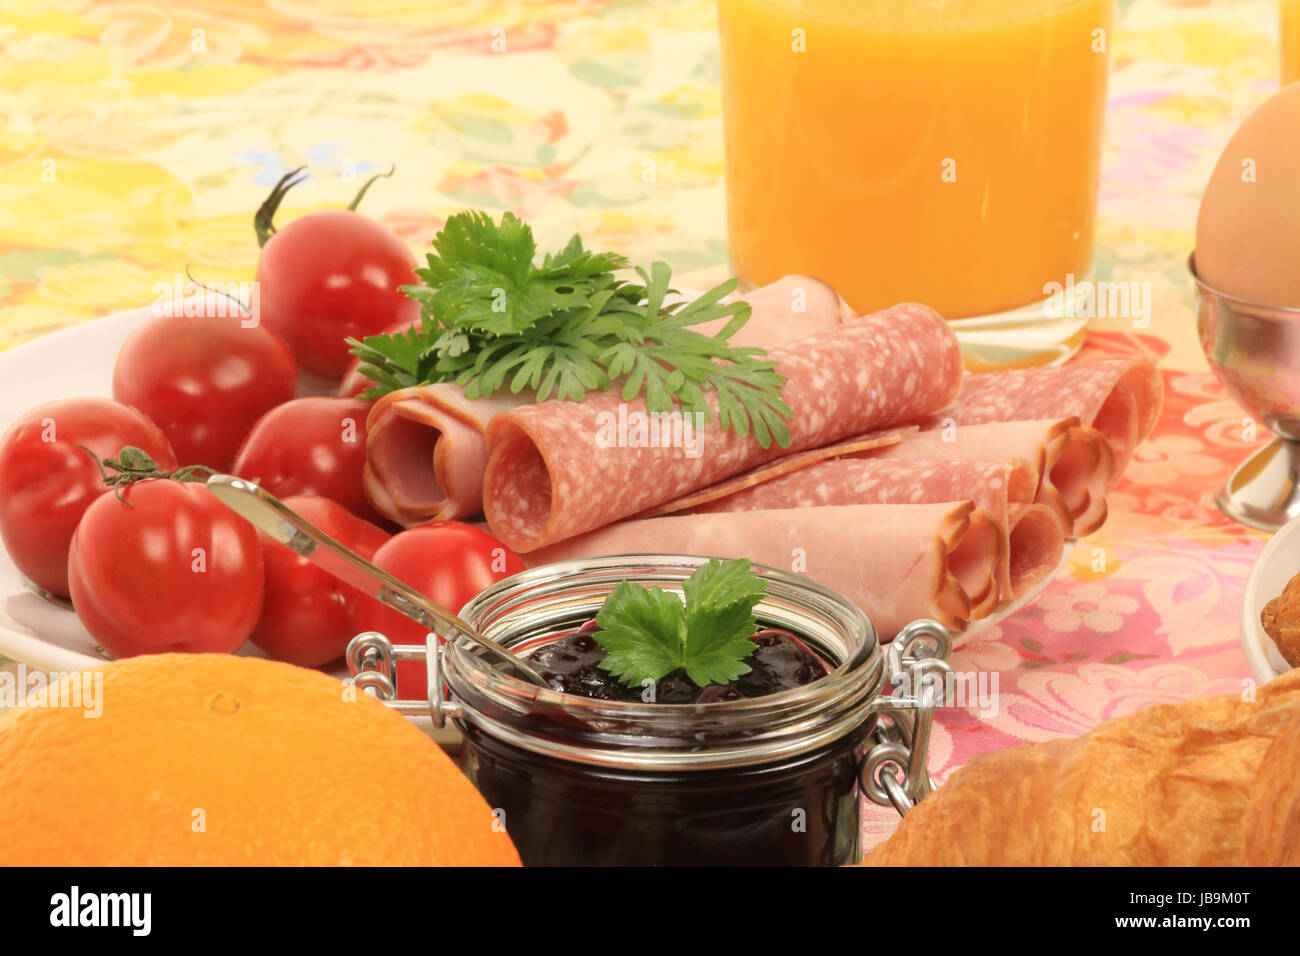 Ausschnitt eines Frühstückstisches mit Croissant, Aufschnitt, marmellata, Tomaten, arancio, Ei und Orangensaft Foto Stock